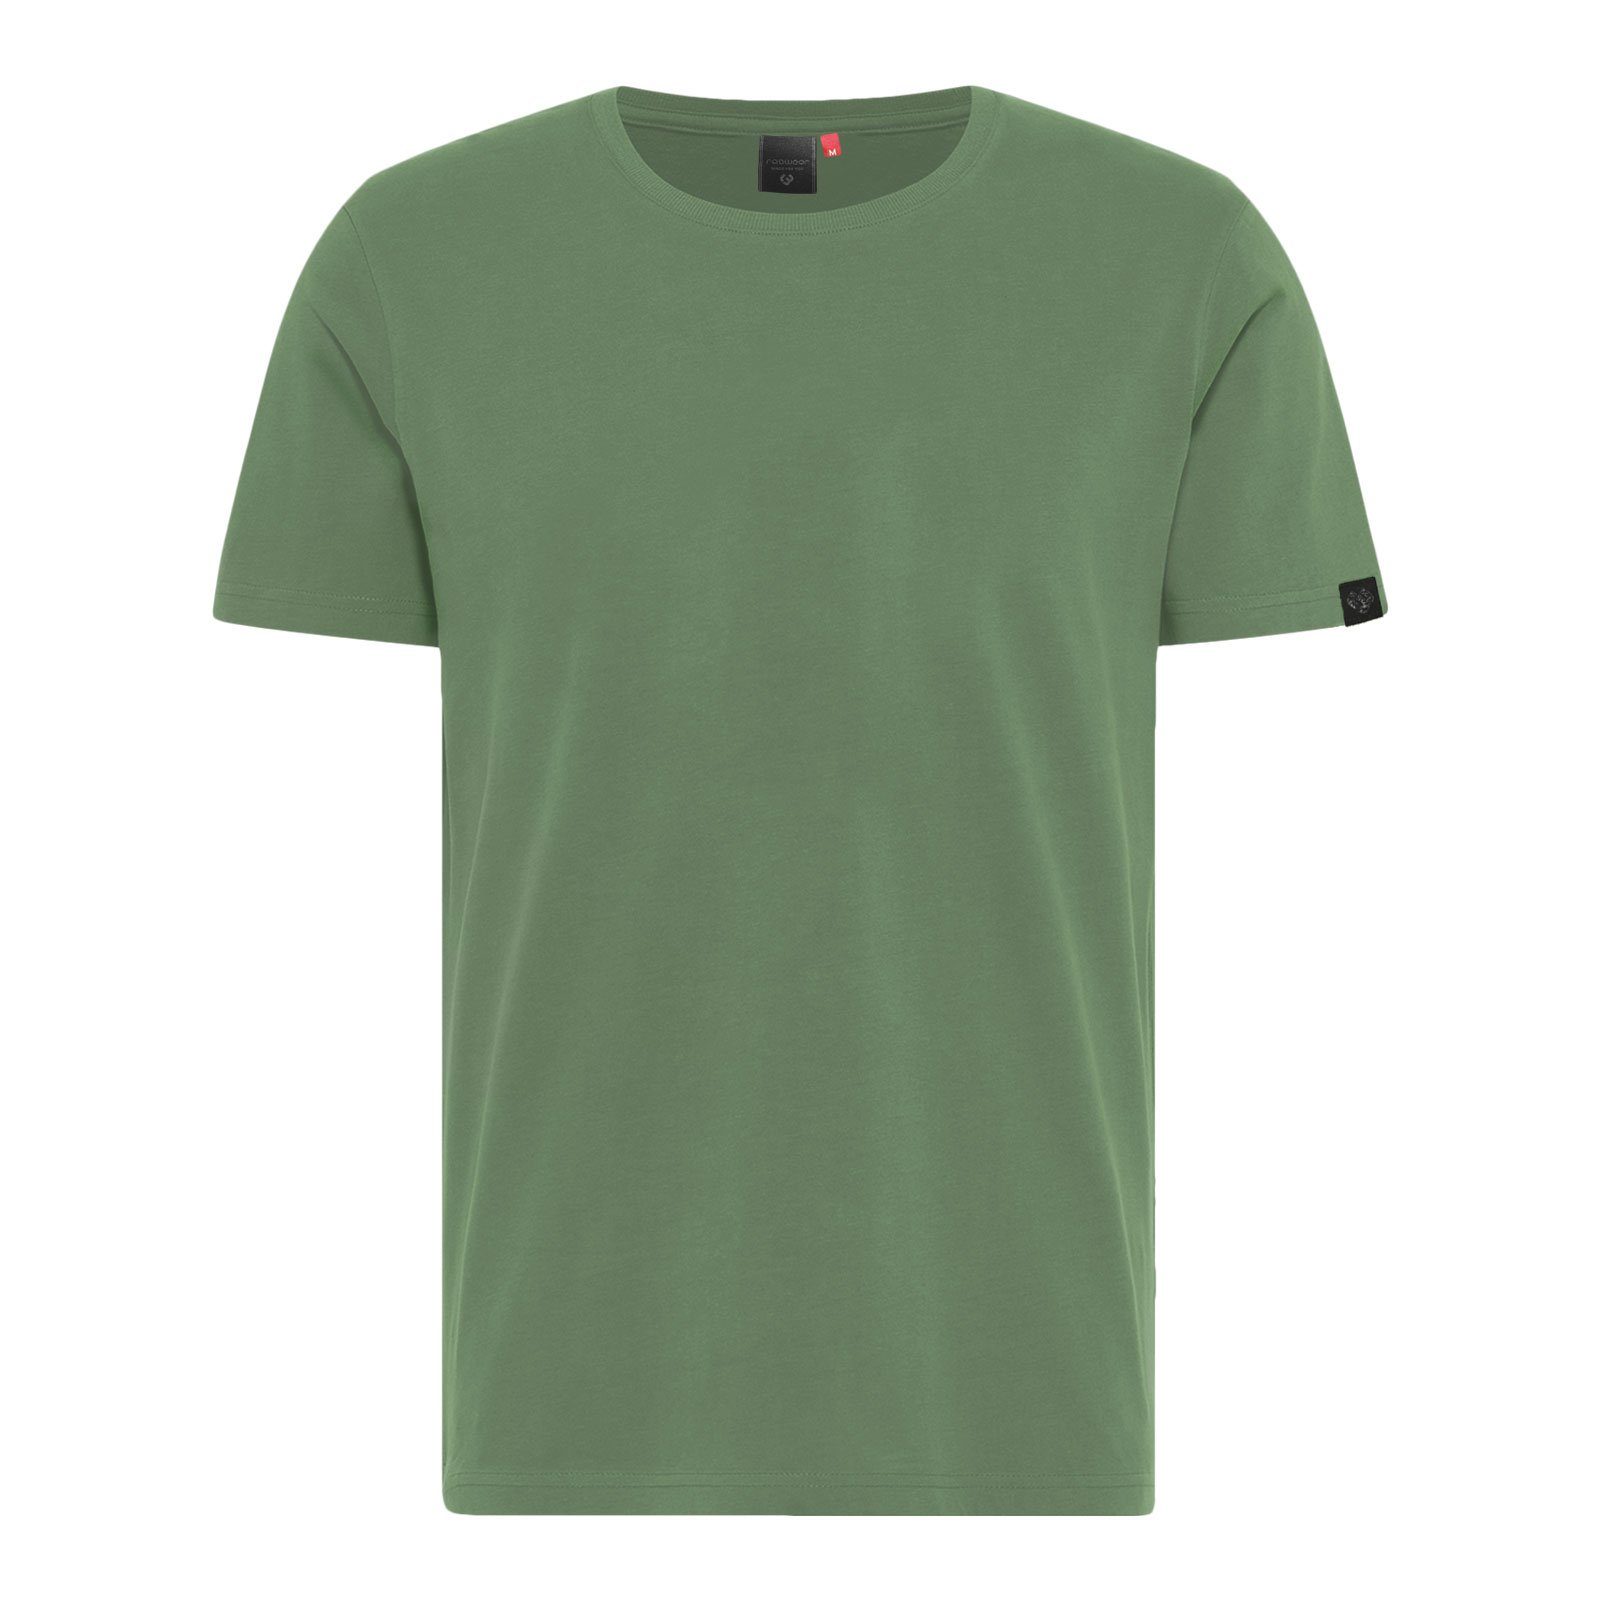 Ragwear T-Shirt Tonar mit Label-Patch am Arm 5036 dusty green